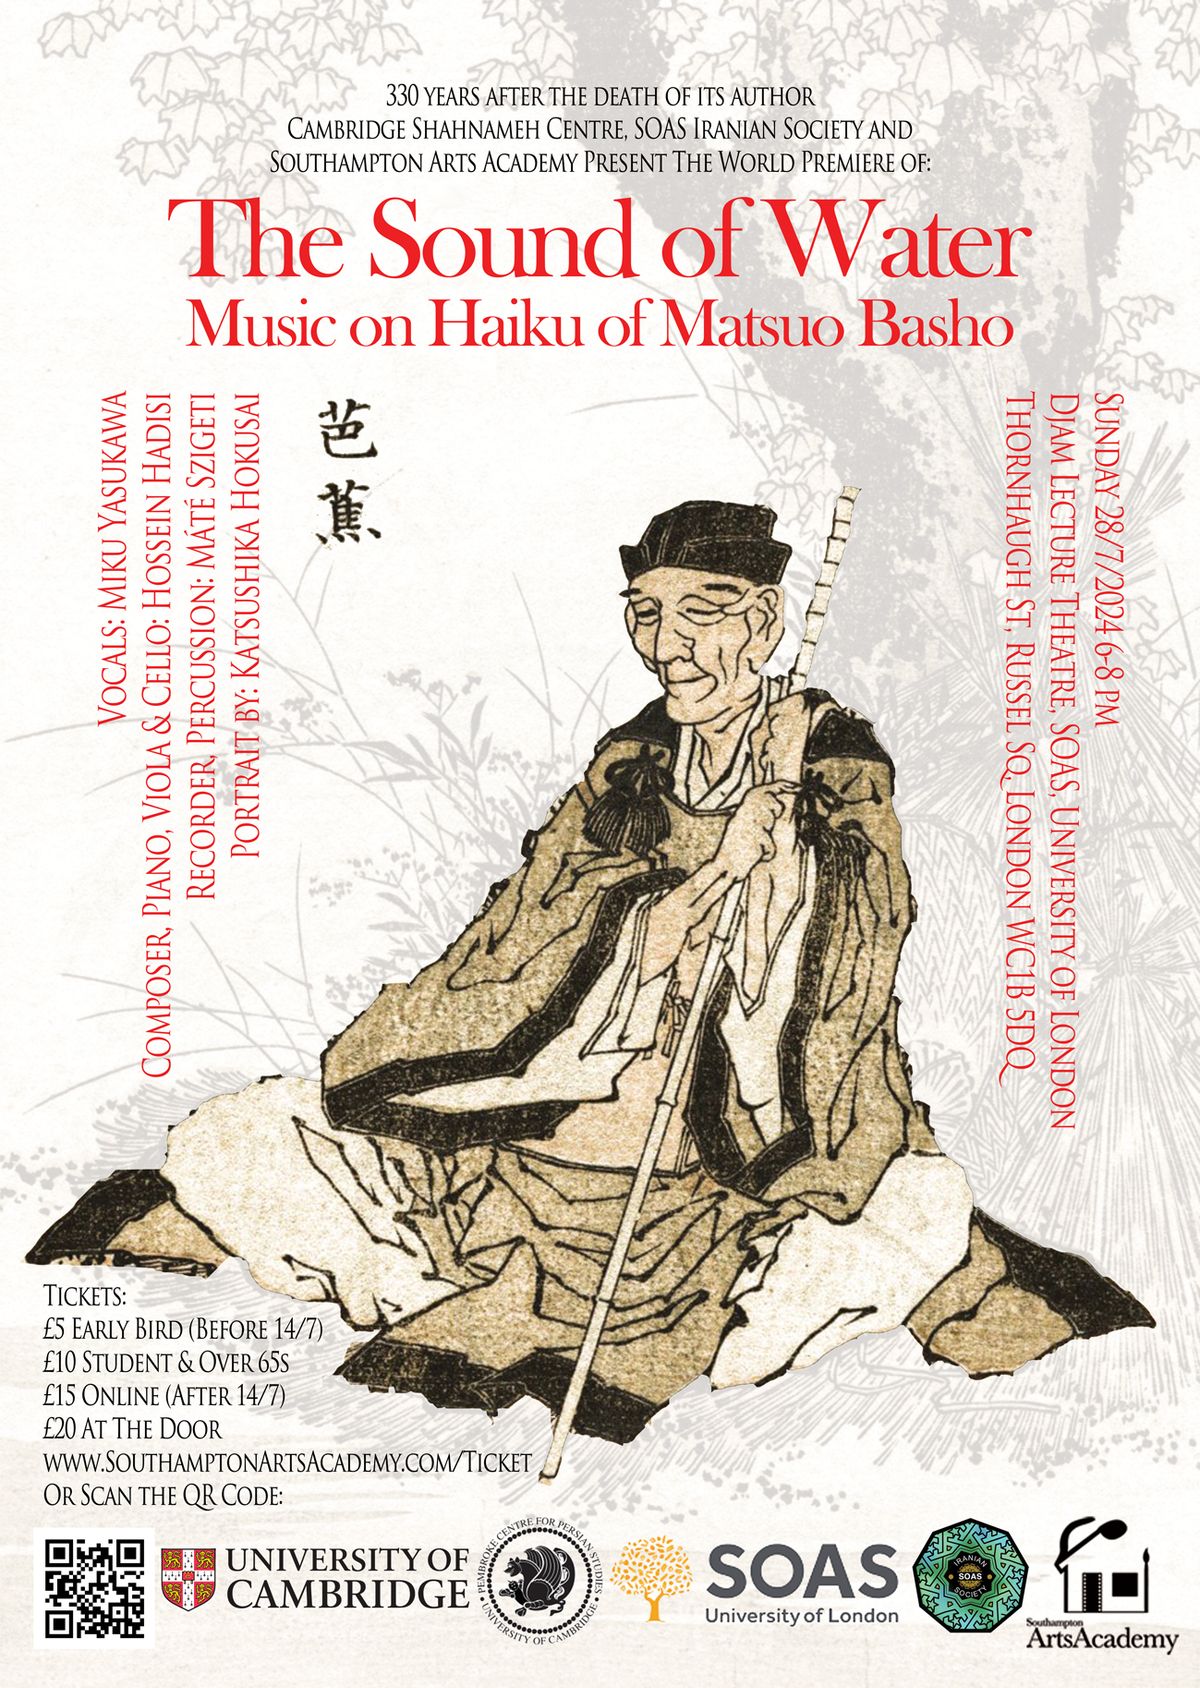 The Sound of Water: Music on Haiku of Matsuo Basho